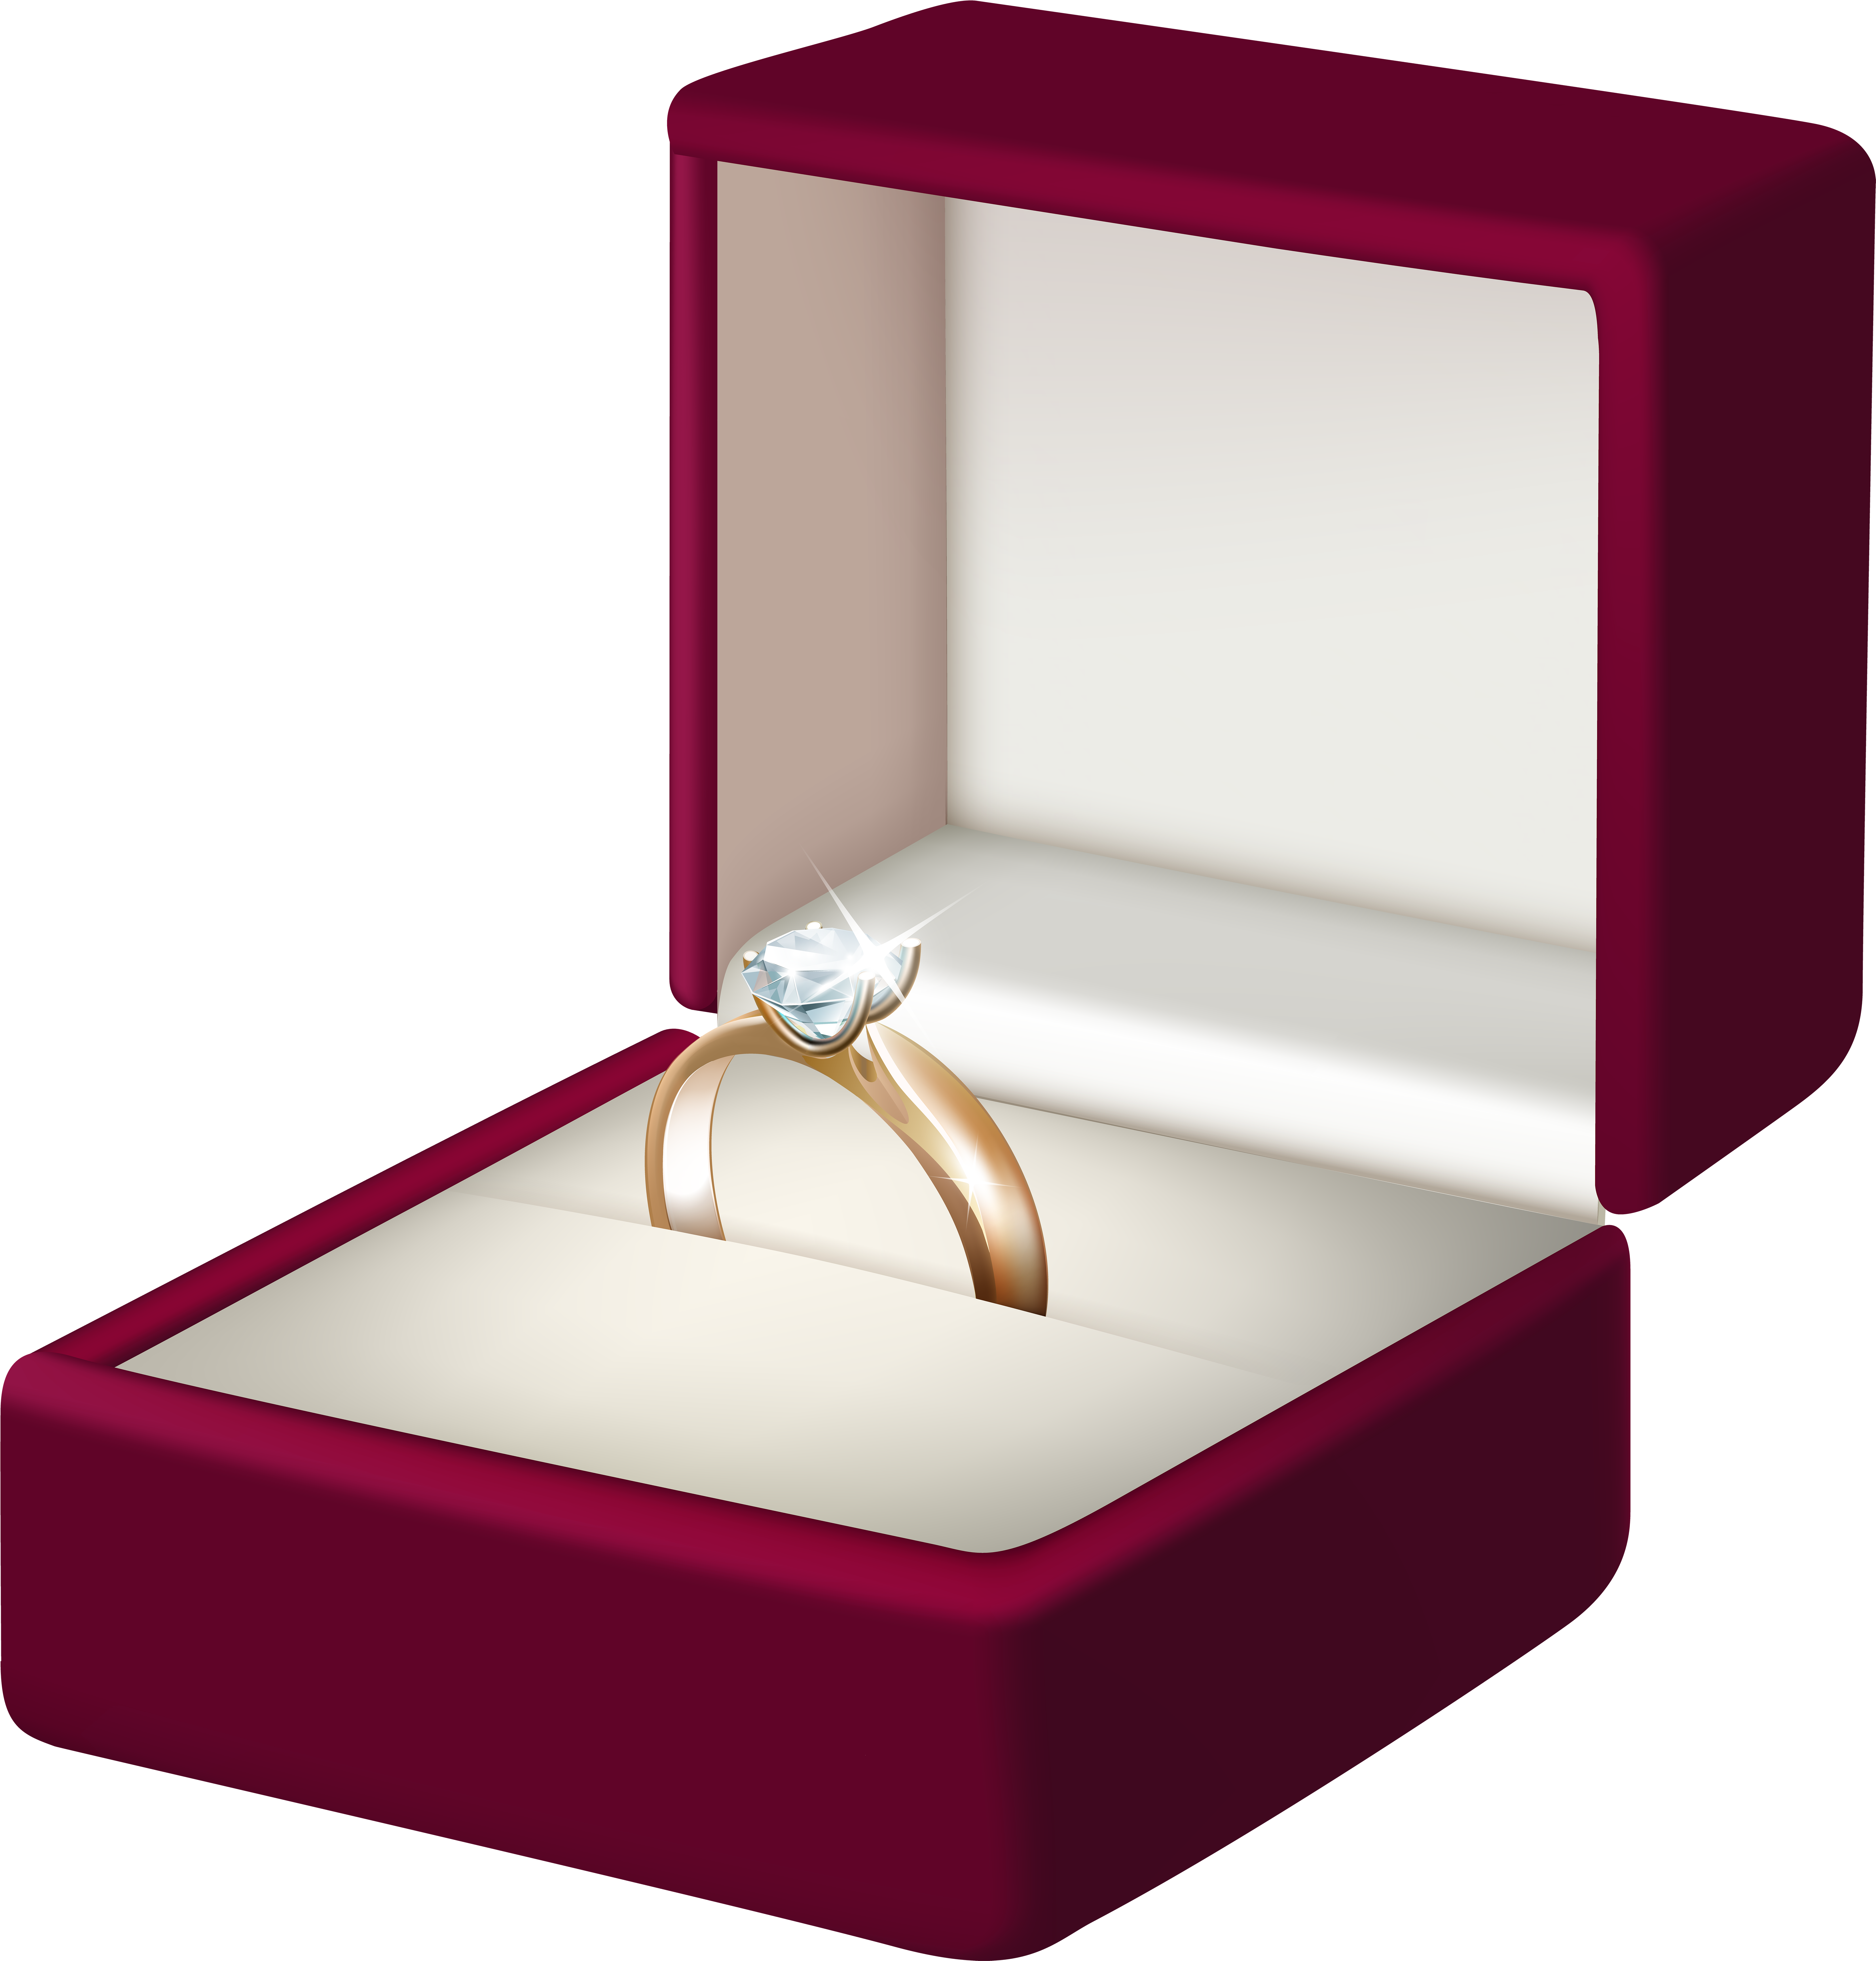 Украшения в красной коробке. Свадебное кольцо в коробке. Обручальное кольцо в коробочке. Свадебные кольца в коробочке. Коробка для кольца.